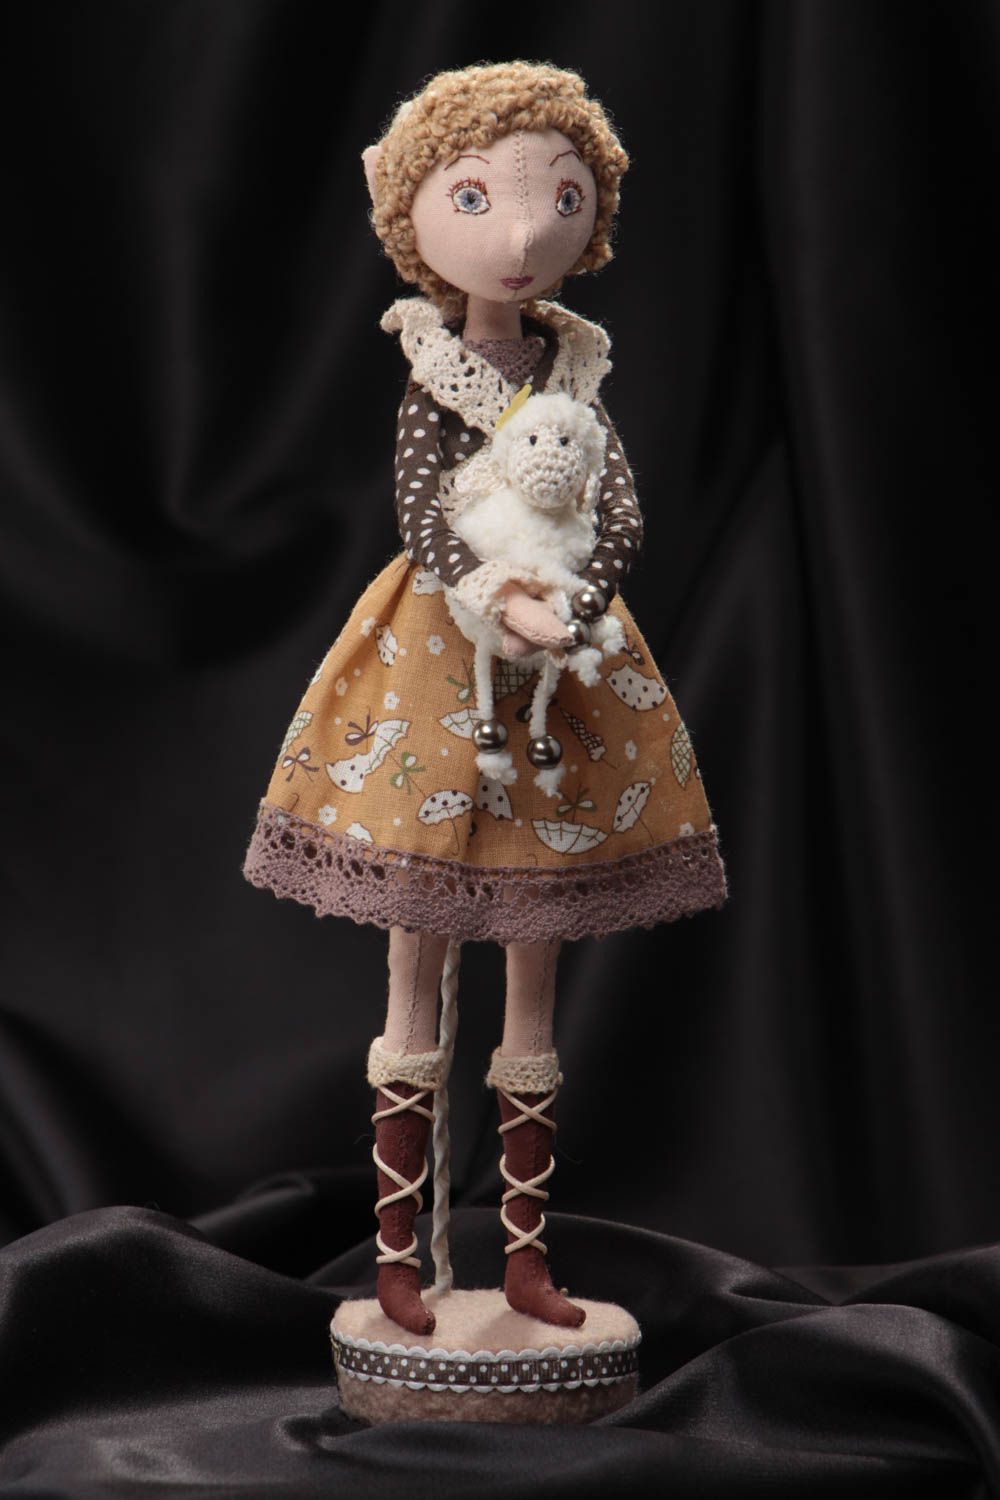 Кукла для интерьера из ткани мягкая в милом костюме на подставке ручной работы фото 1